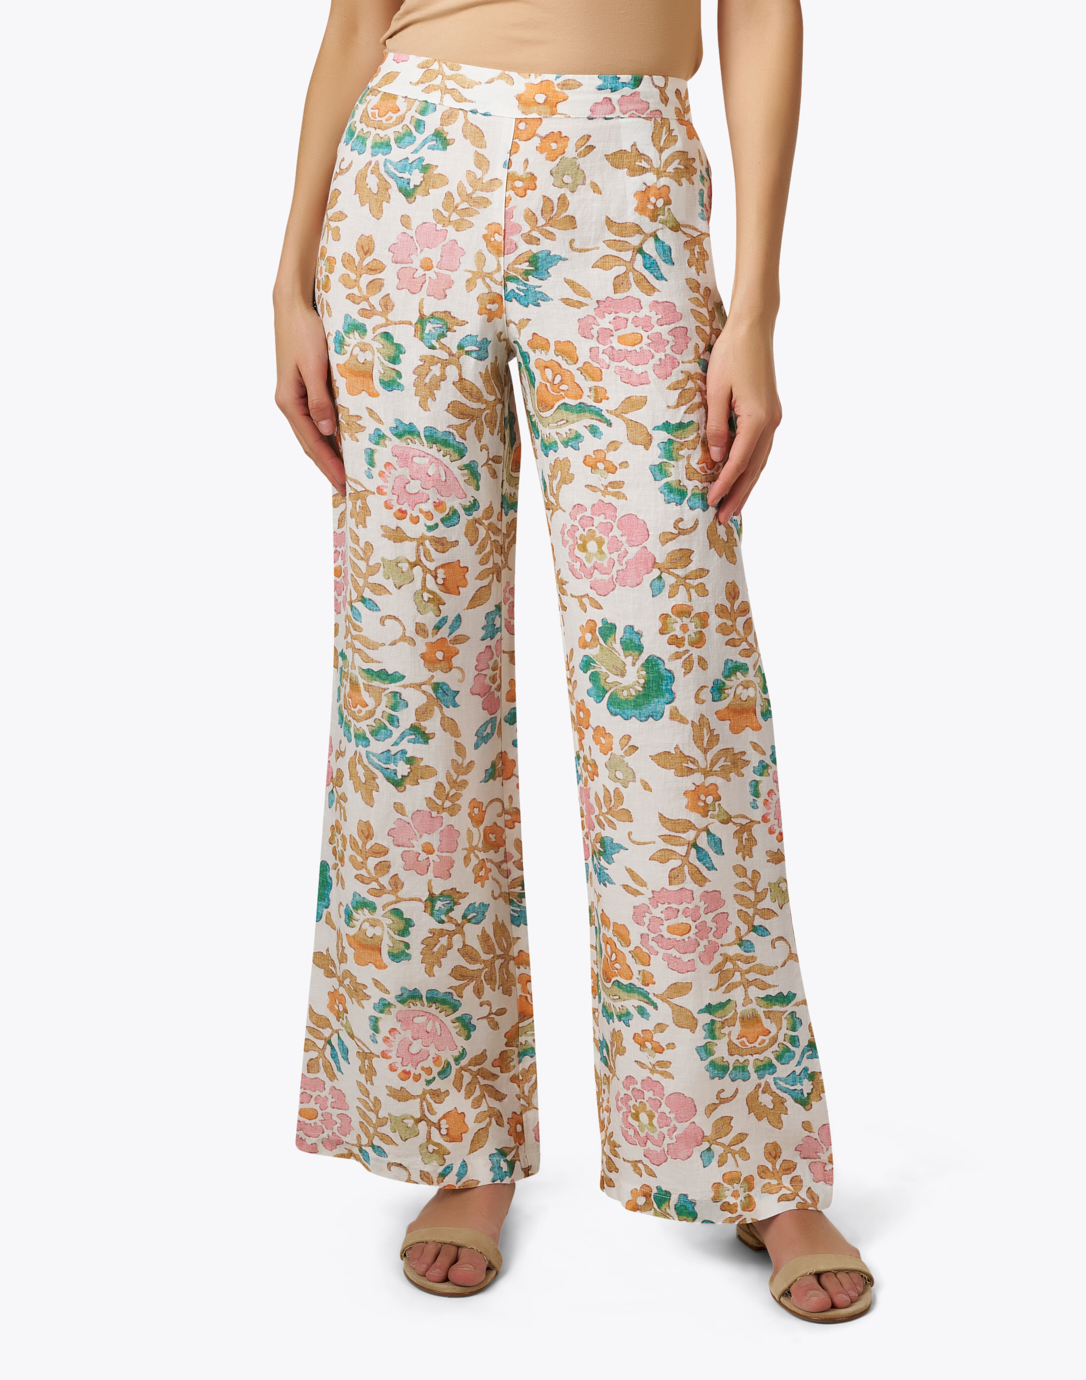 Floral Print Trouser Pants, Floral Print Pants Womens